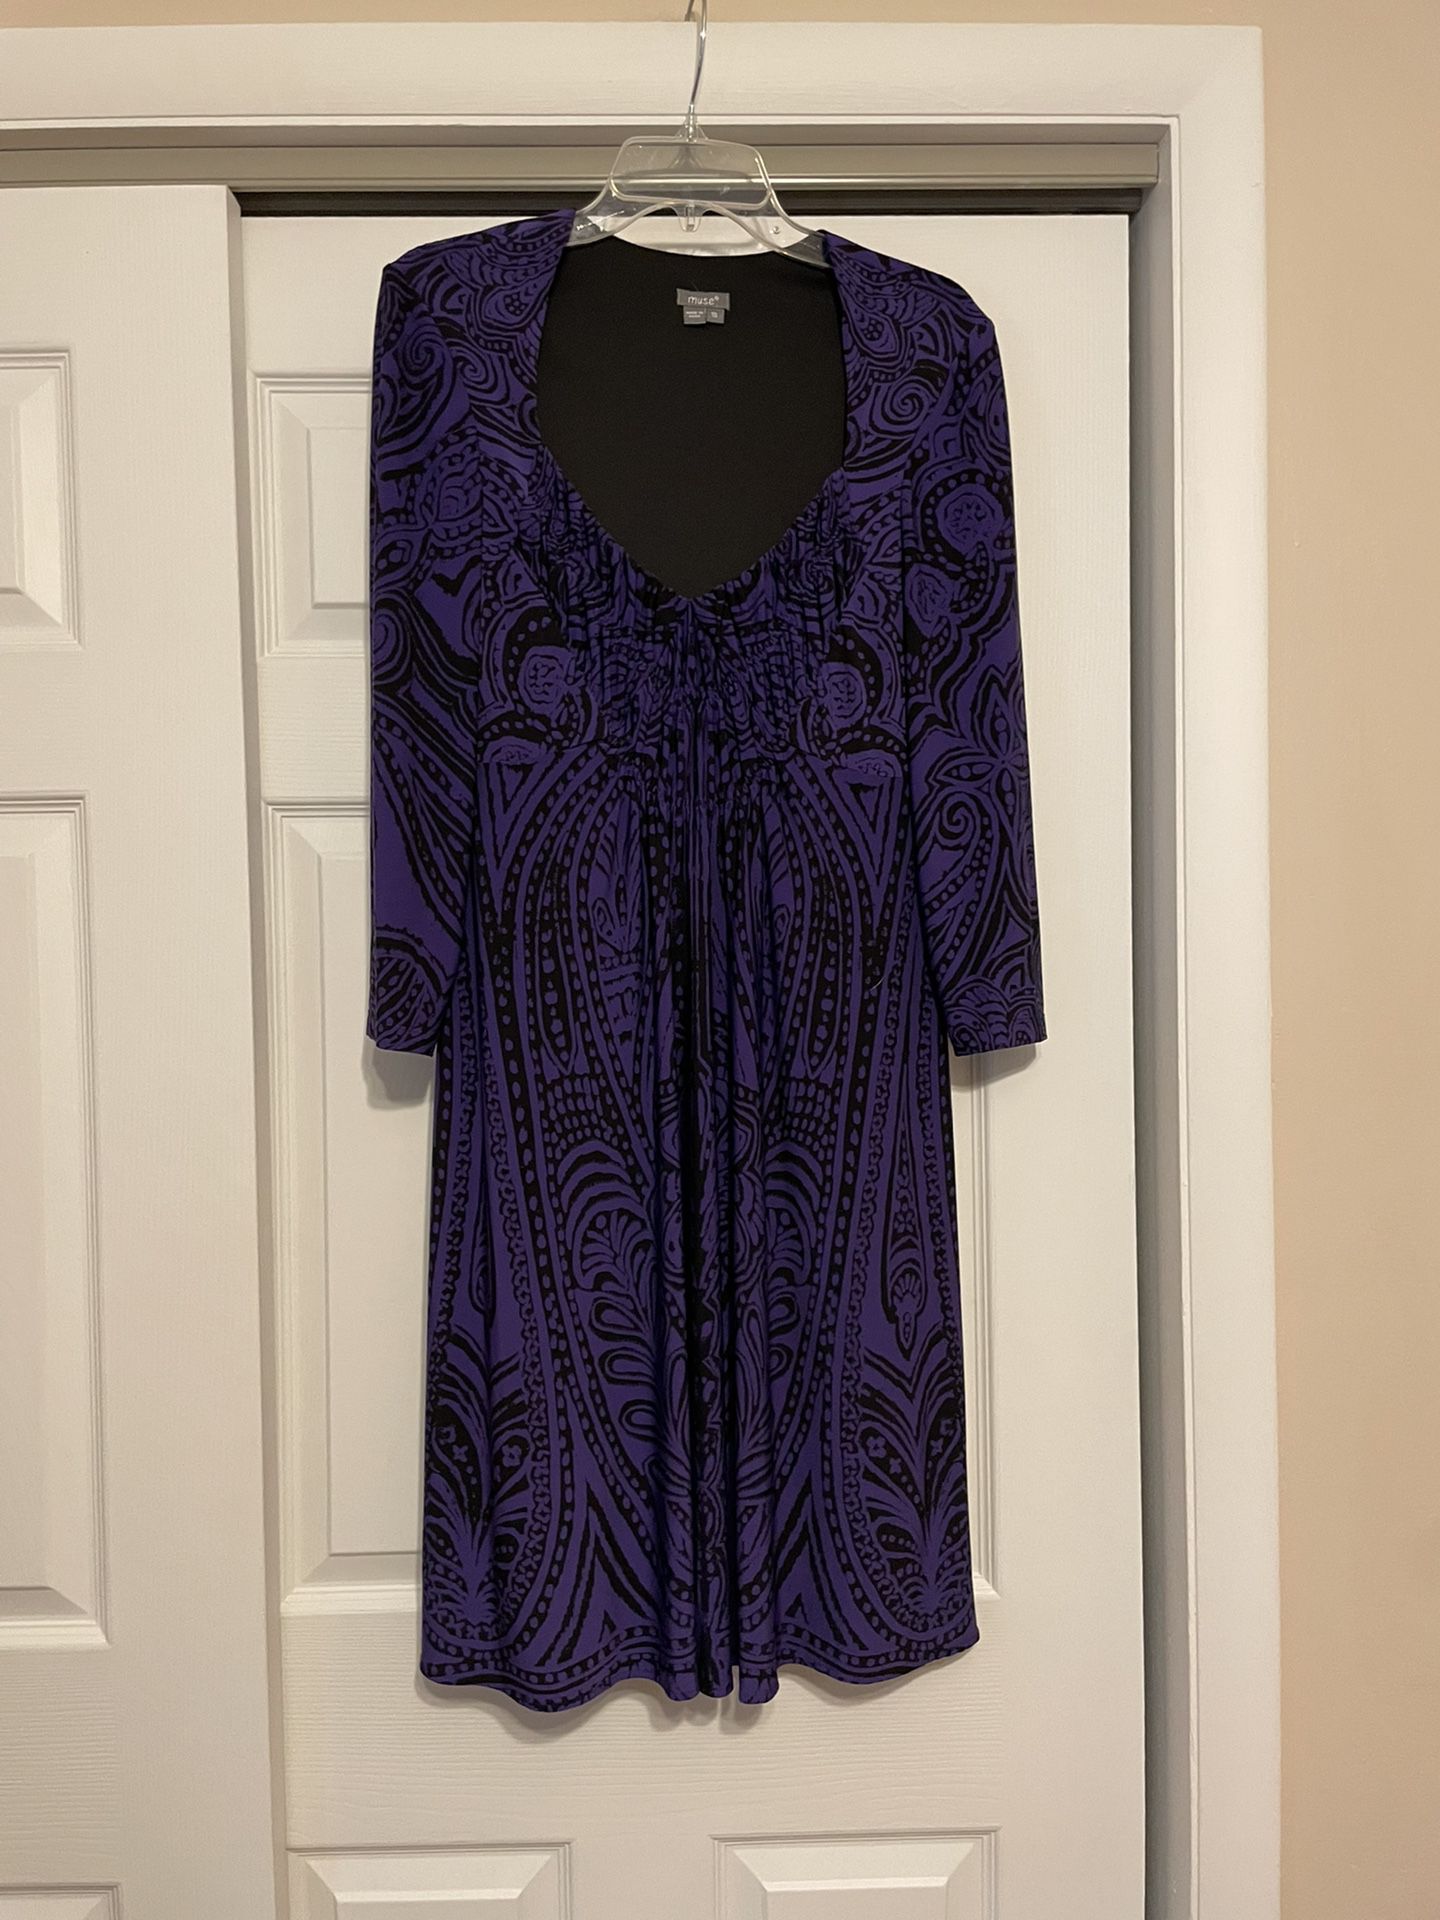 Muse Purple & Black Shift Dress - Size 10